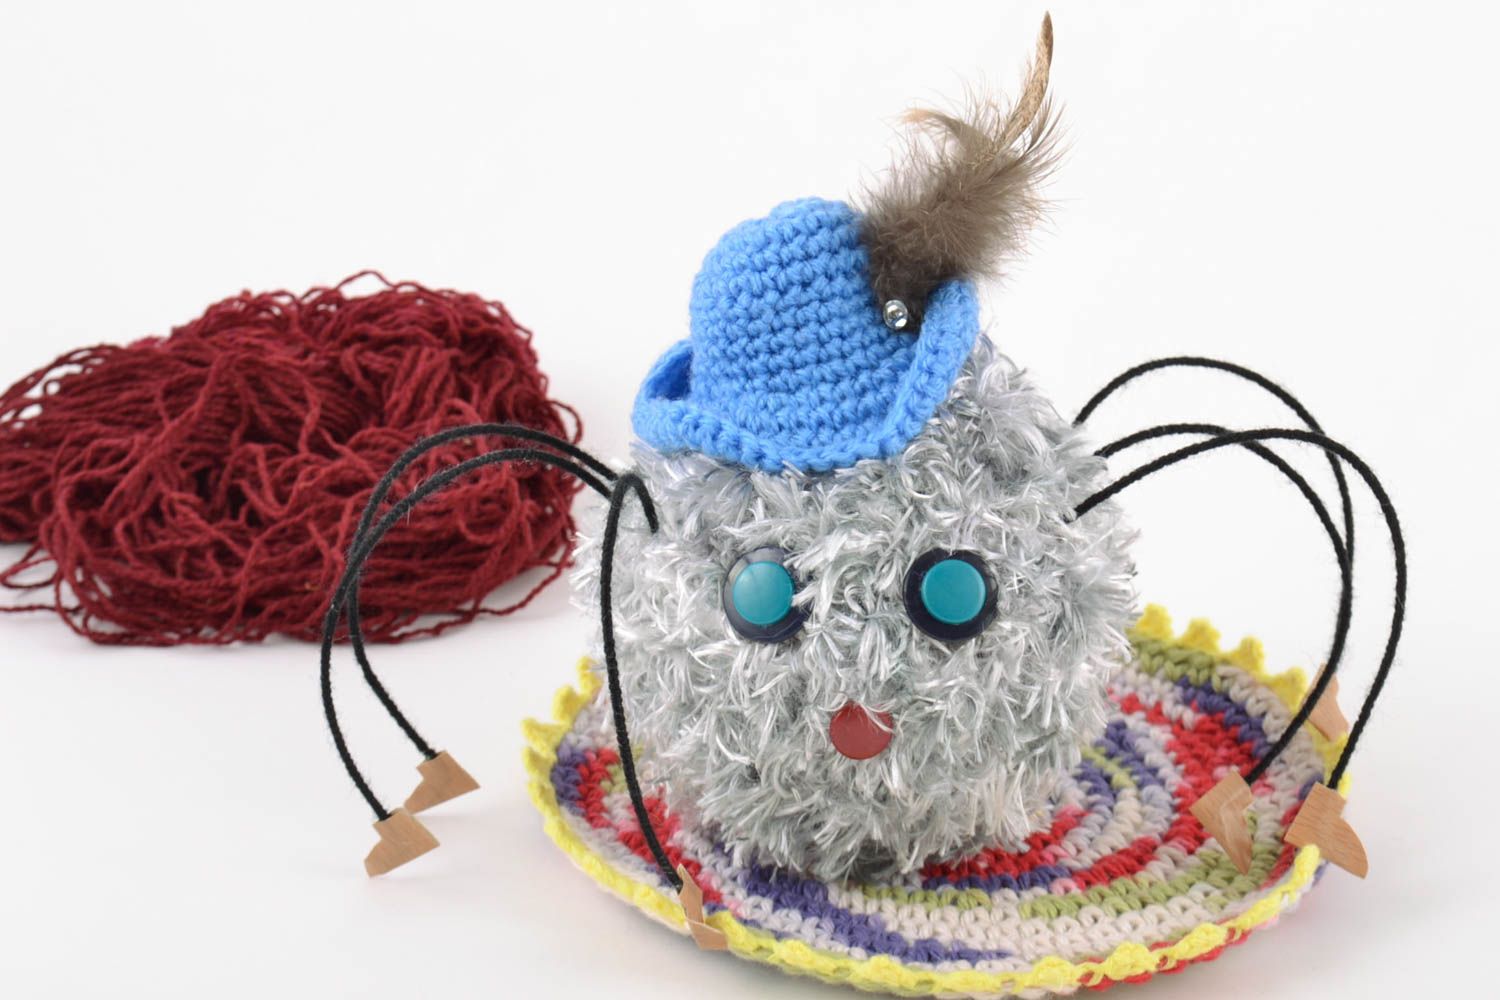 Jouet mou amigurumi tricoté en fils de laine fait main pour enfant Araignée photo 1